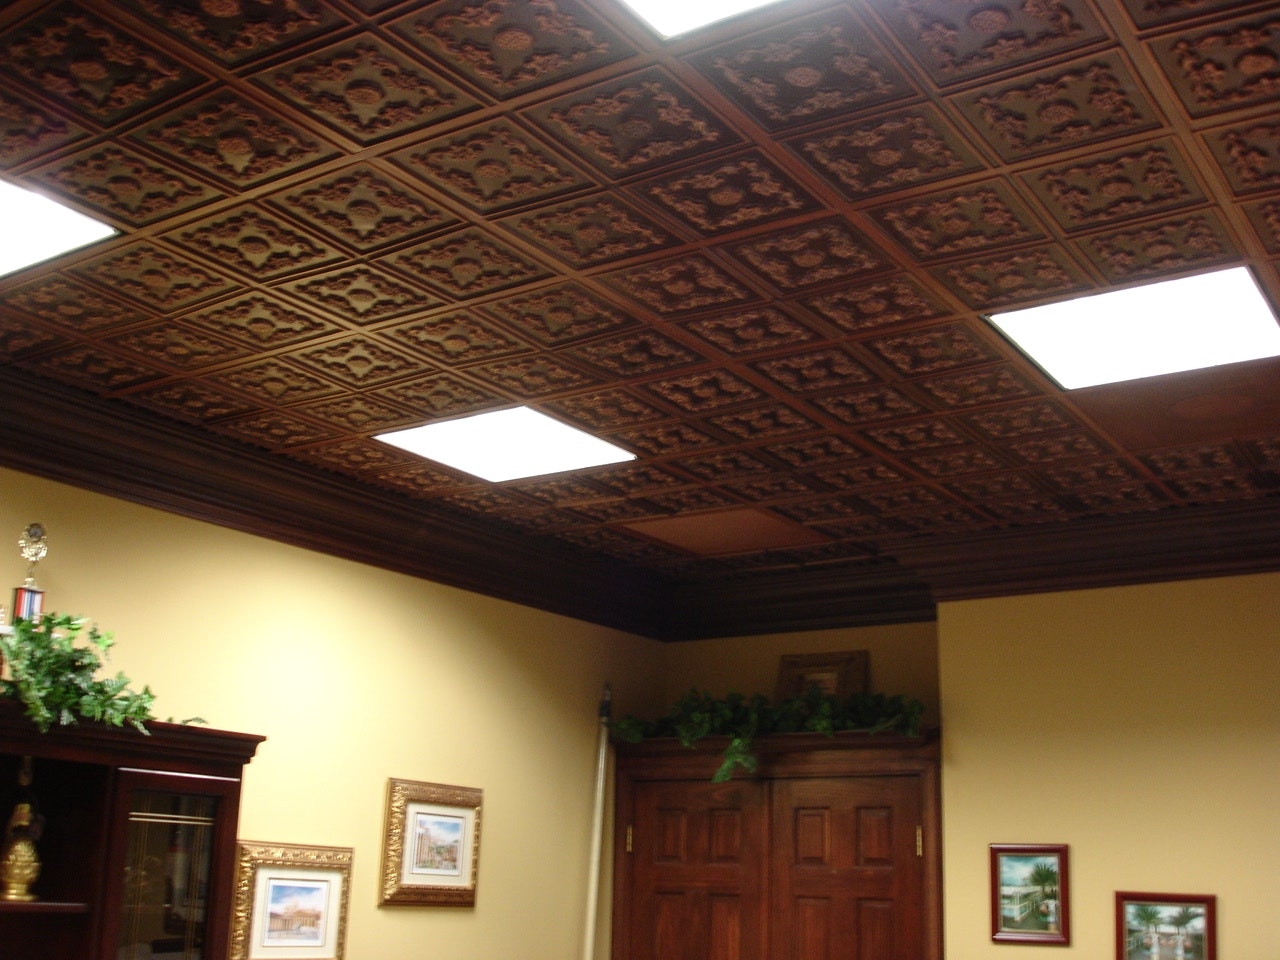 12x24 Drop Ceiling Tiles 12×24 Drop Ceiling Tiles soundproof drop ceiling tiles gallery tile flooring design ideas 1280 X 960